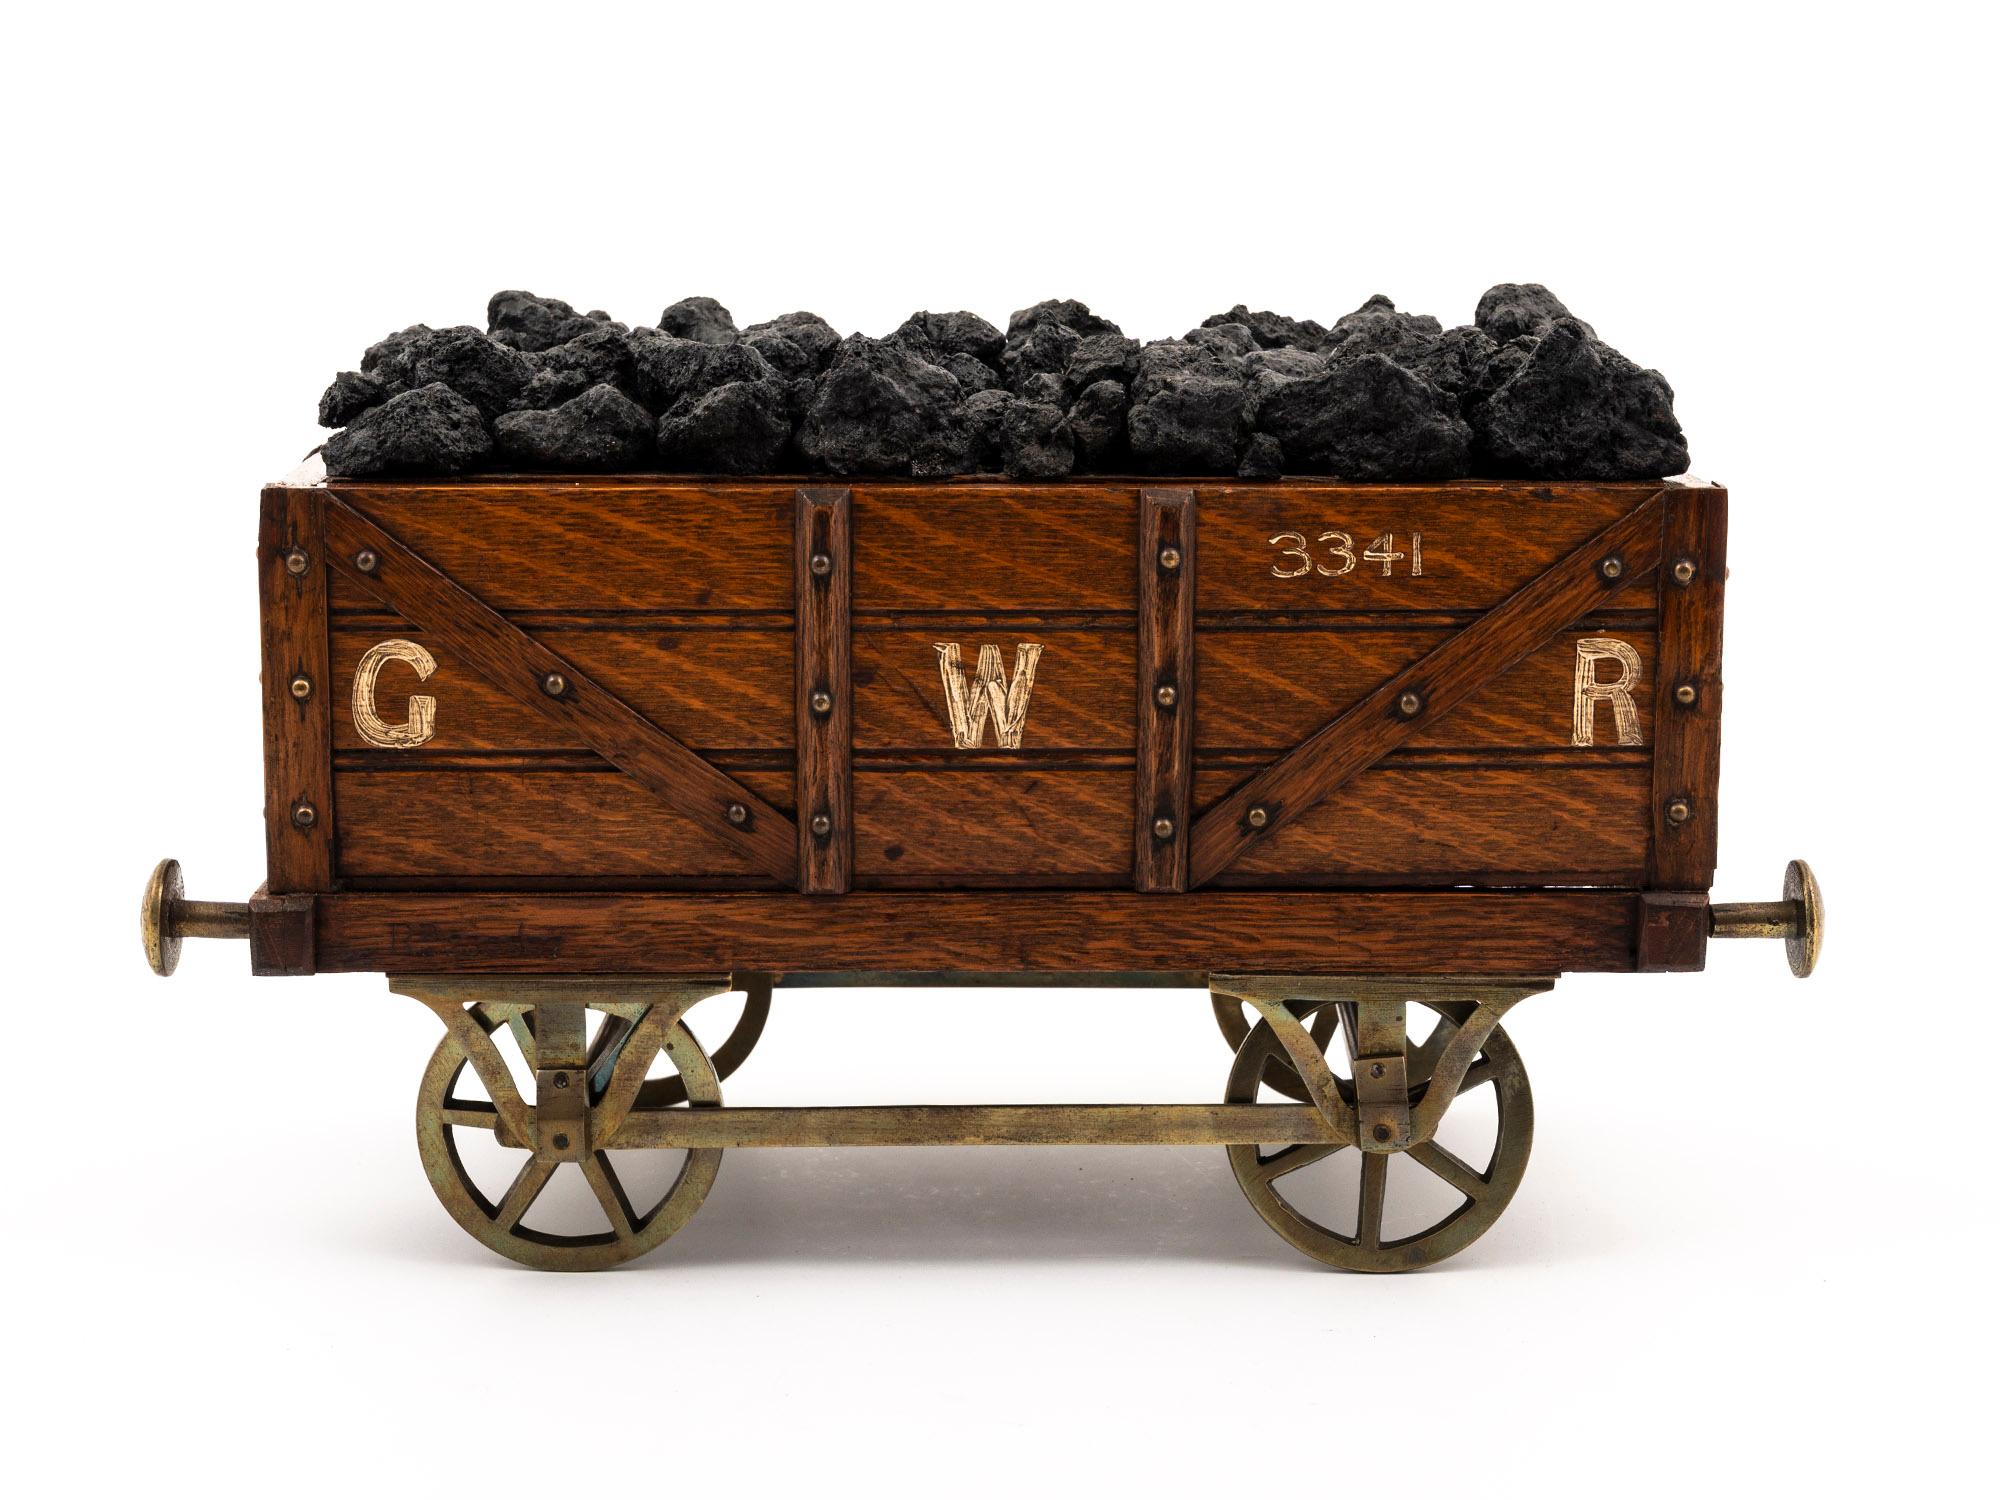 Realistisch geformt 

Aus unserer Boxen-Kollektion freuen wir uns, Ihnen diese Neuheit anbieten zu können: Great Western Railway Bogie Coal Wagon Humidor. Der Humidor ist aus Eichenholz geschnitzt und hat die Form eines Eisenbahnwaggons, der Kohle